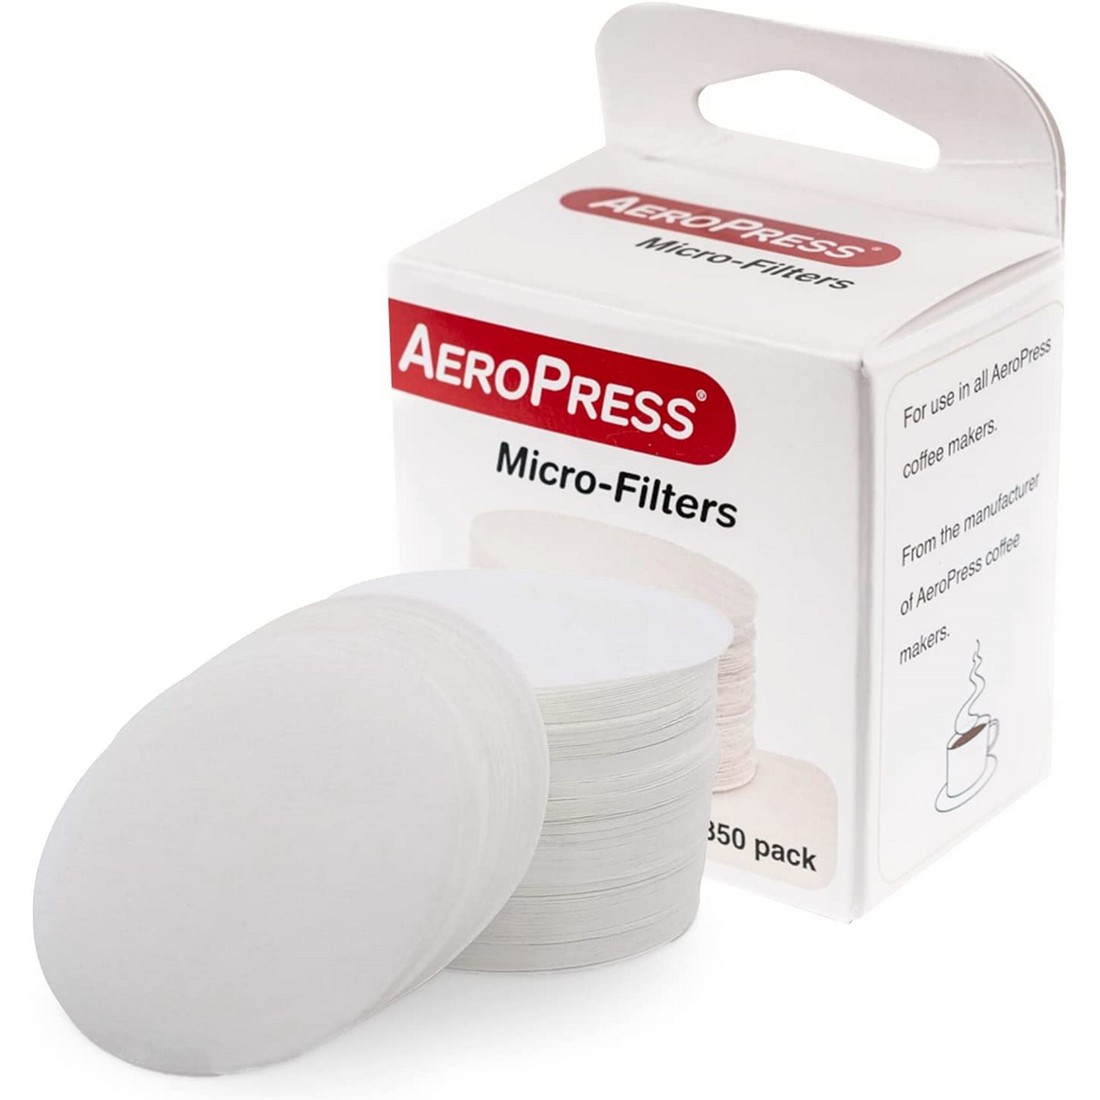 AeroPress - Filtros de reemplazo - 350 PCS